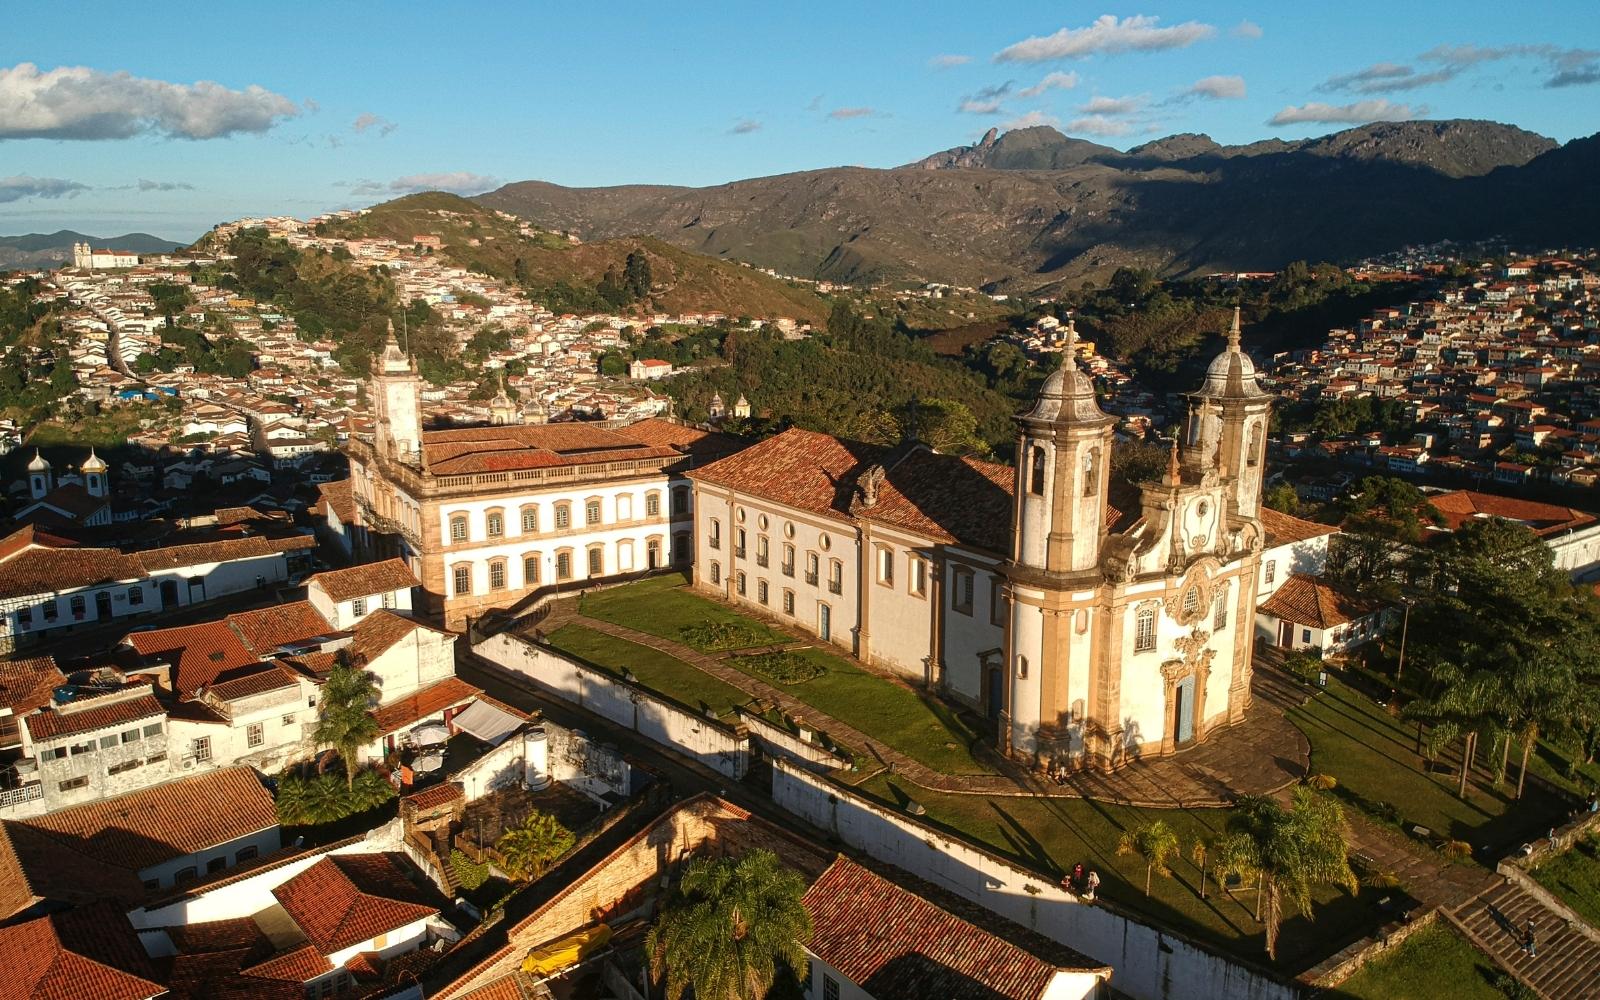 Imagem aérea do centro histórico de Ouro Preto - Foto: Biblioteca de imagens do Canva